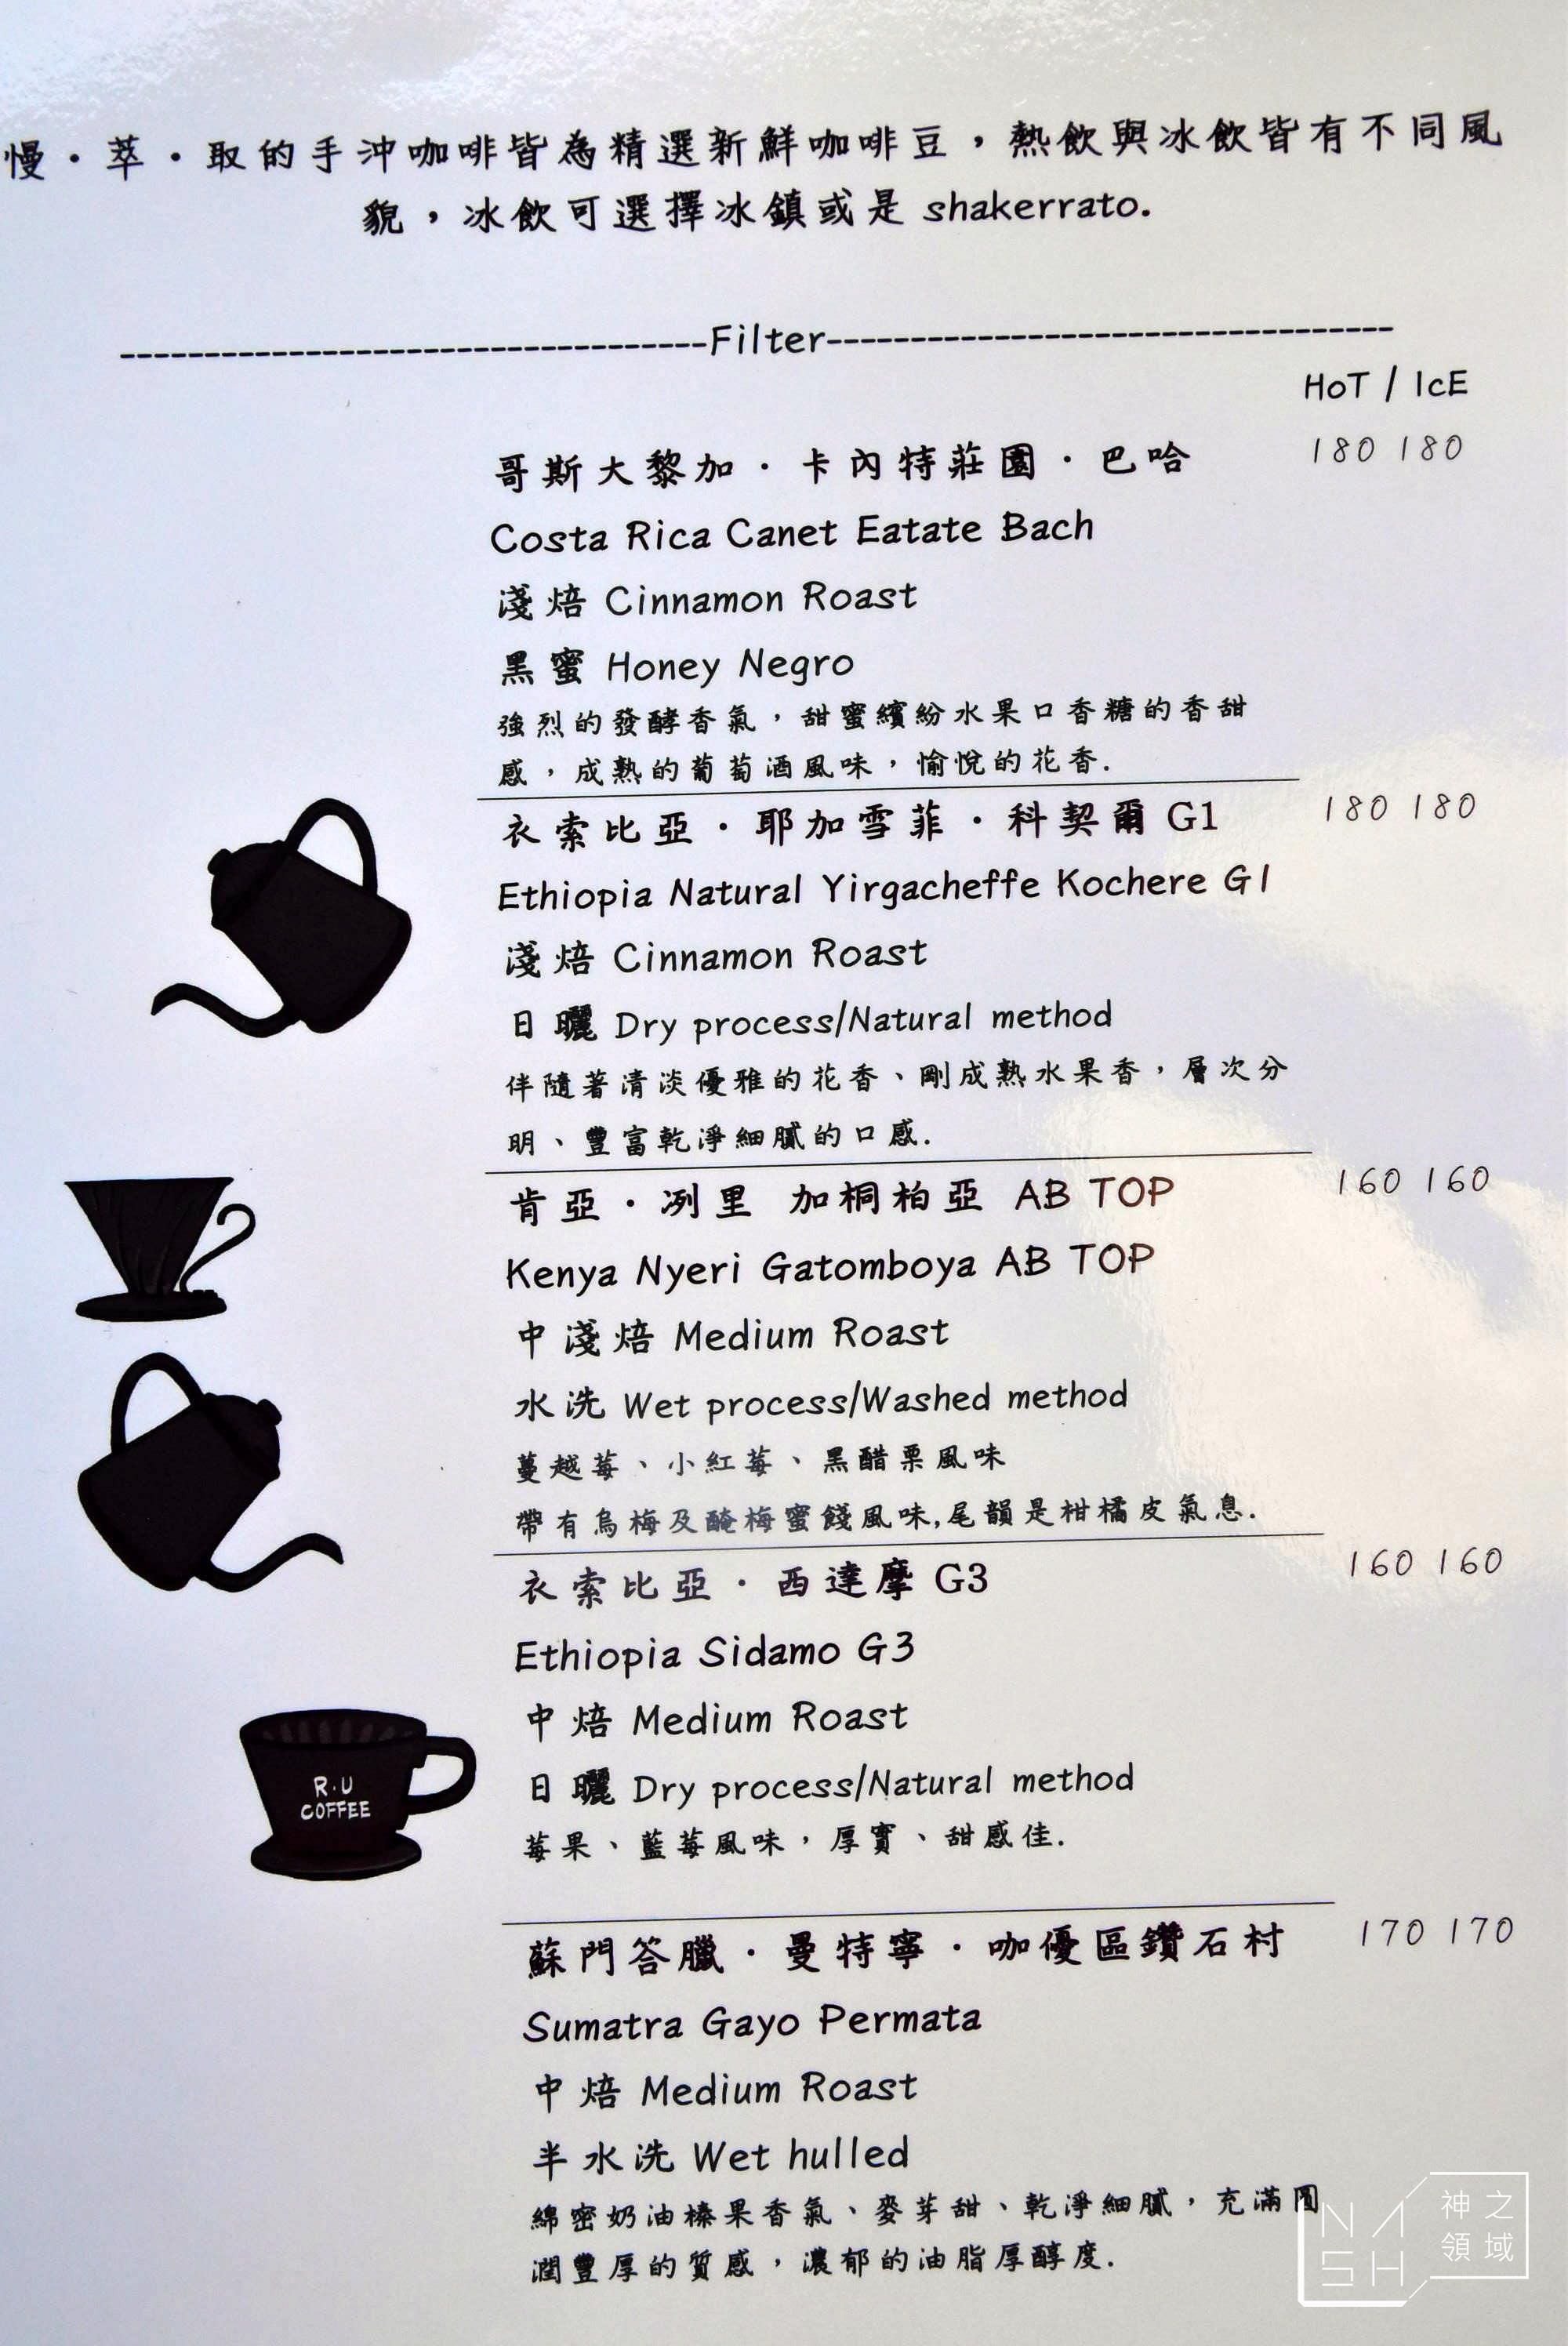 R．U Coffee,天母美食,天母咖啡,芝山咖啡,芝山咖啡推薦